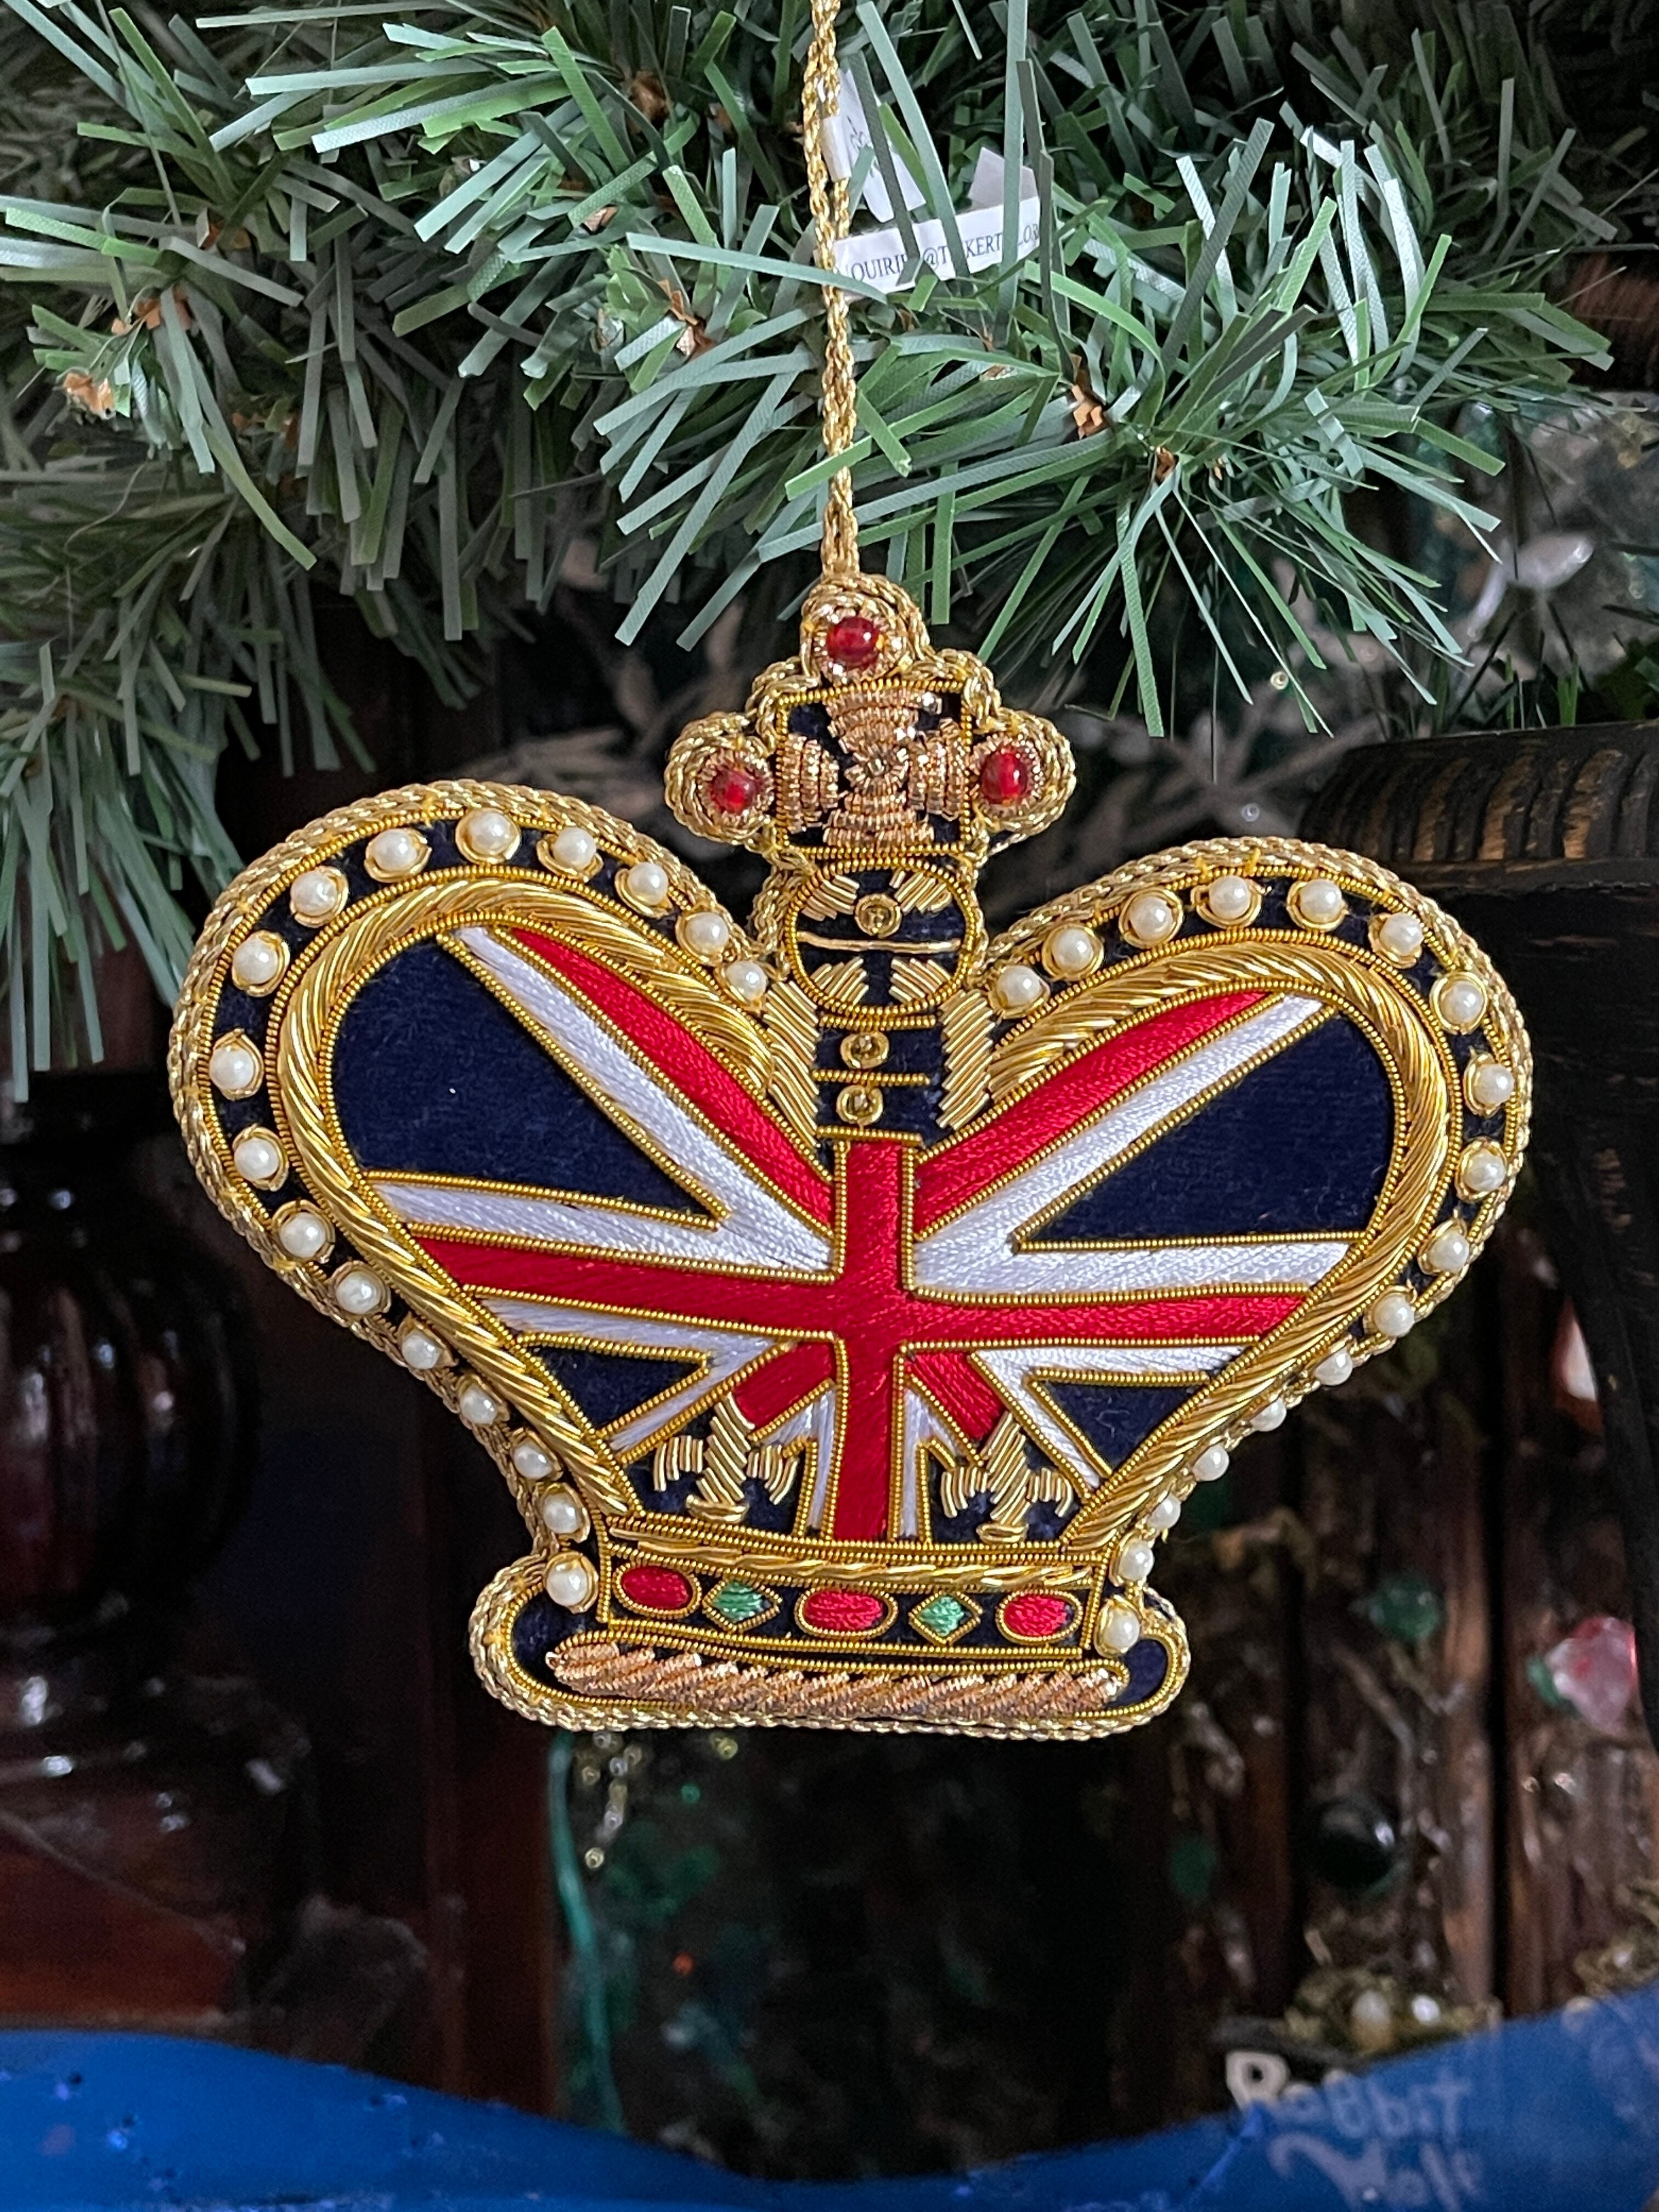 『Royal Palace』ユニオンジャック クラウン オーナメント大 Union Jack crown tree decoration